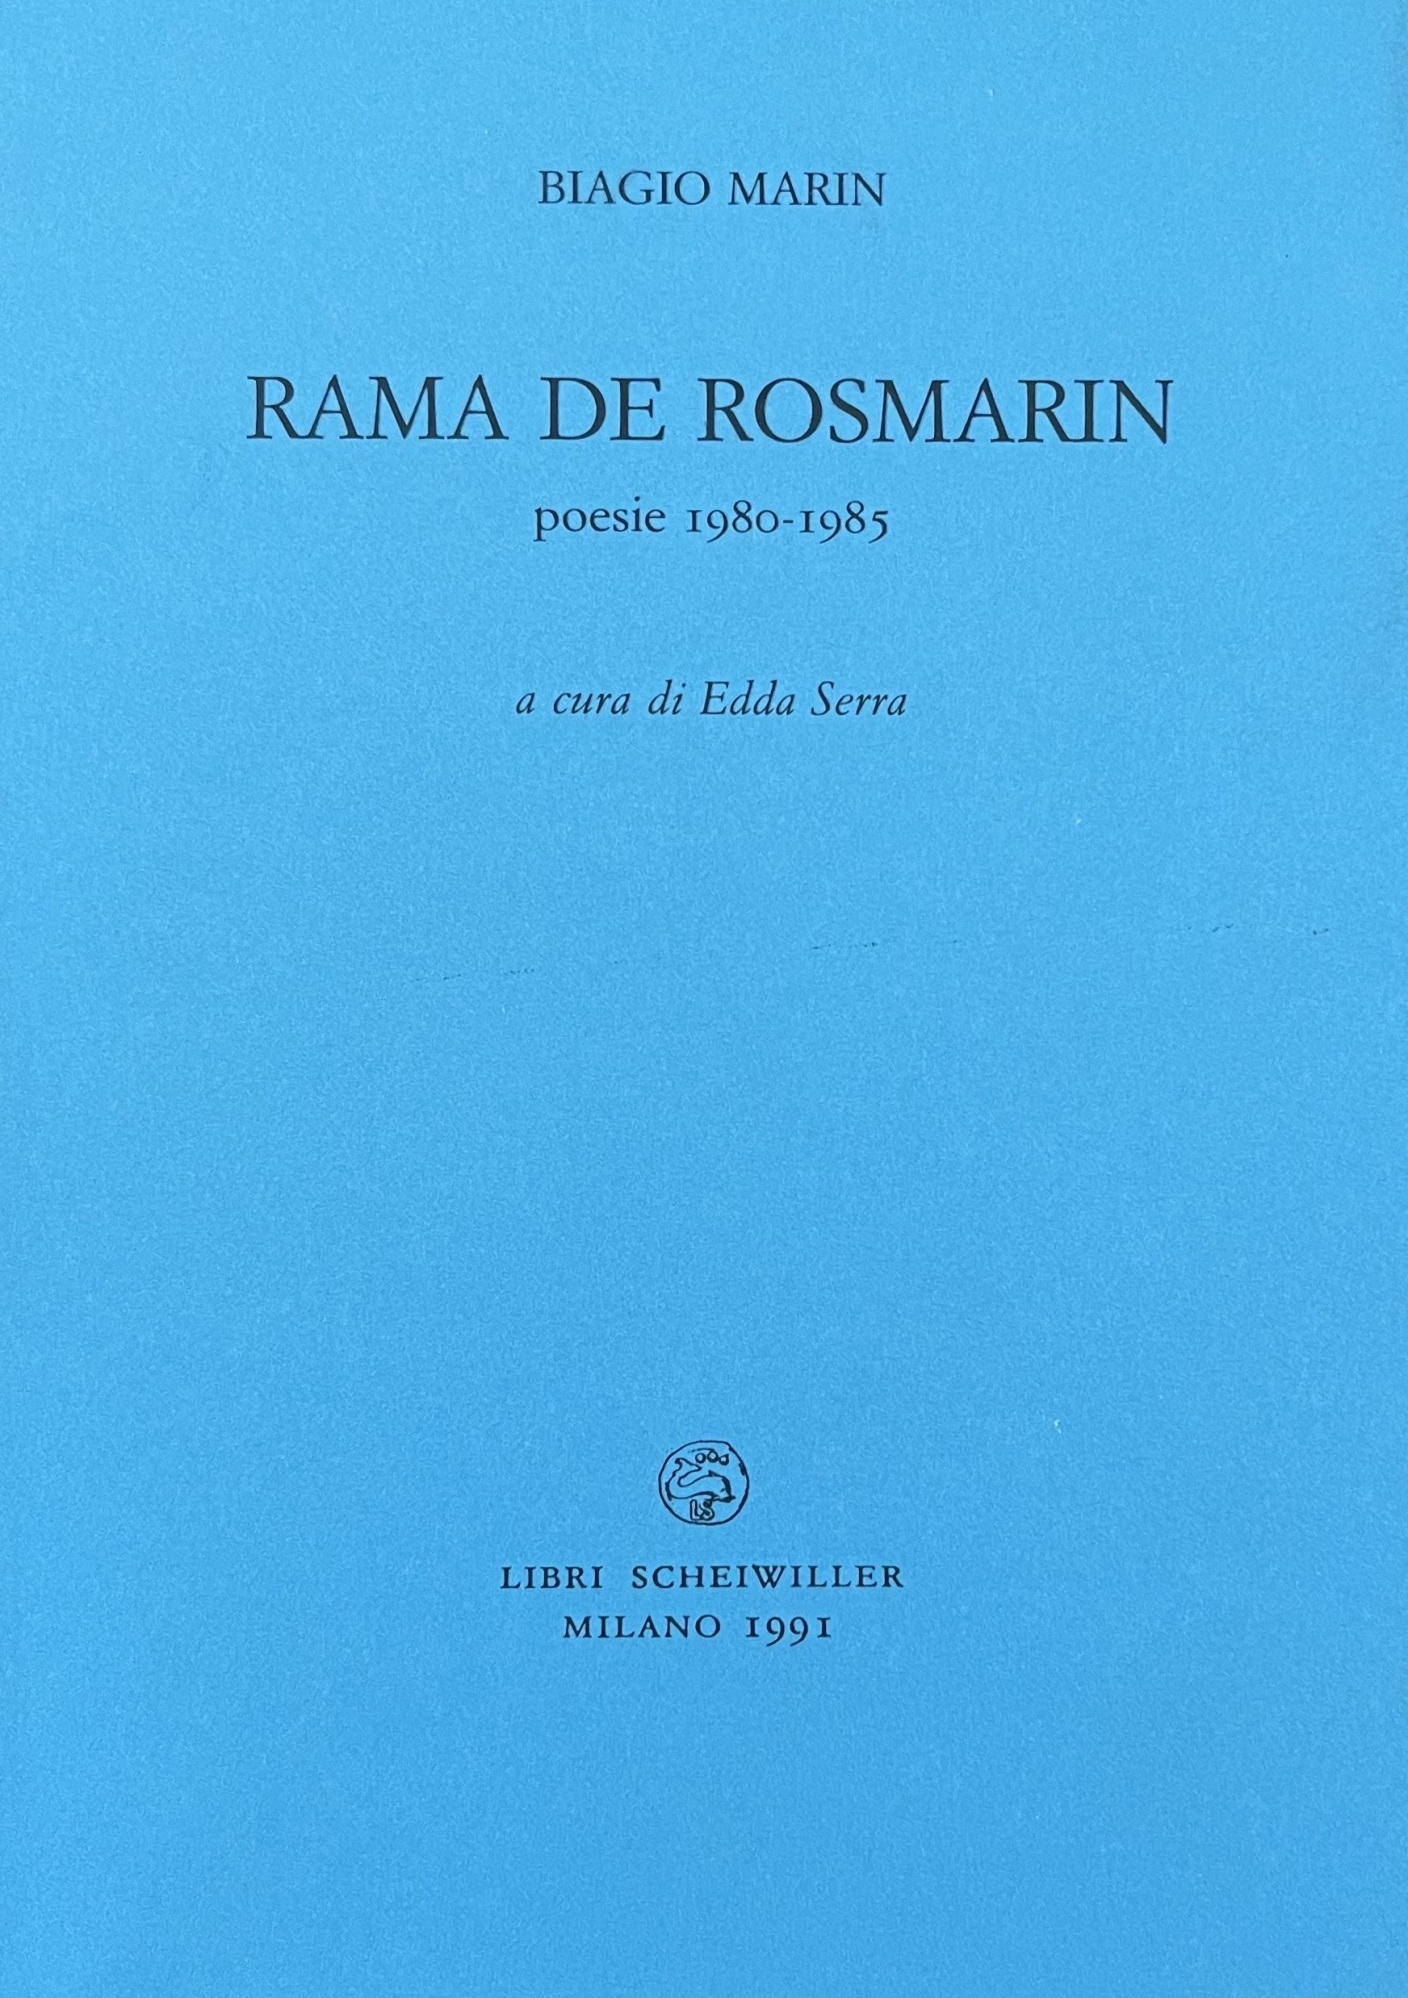 RAMA DE ROSMARIN POESIE 1980-85